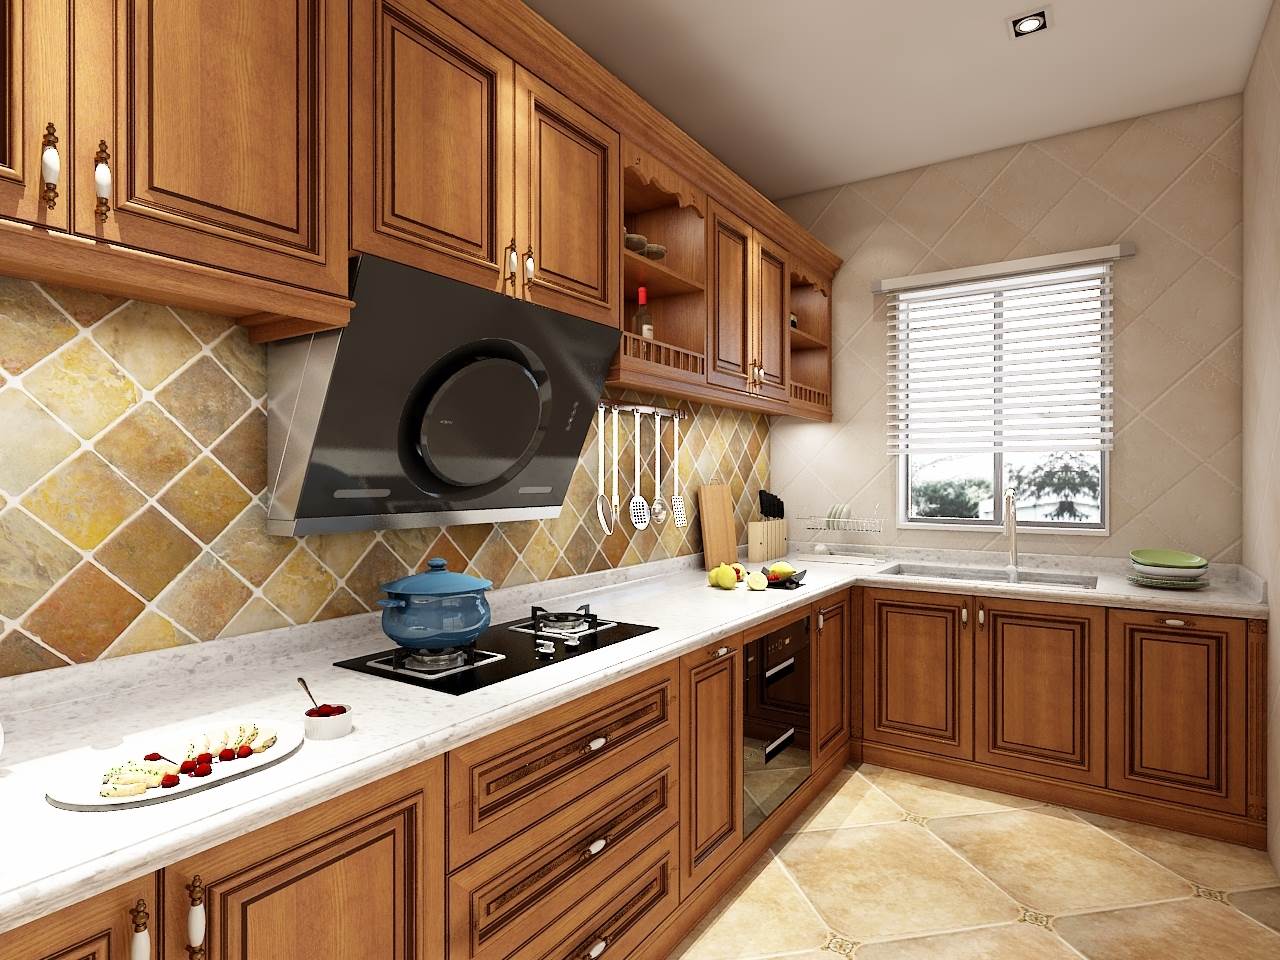 深圳全屋家具定做纯原木中式橱柜订做厨房整体原木红橡门板厨房-阿里巴巴